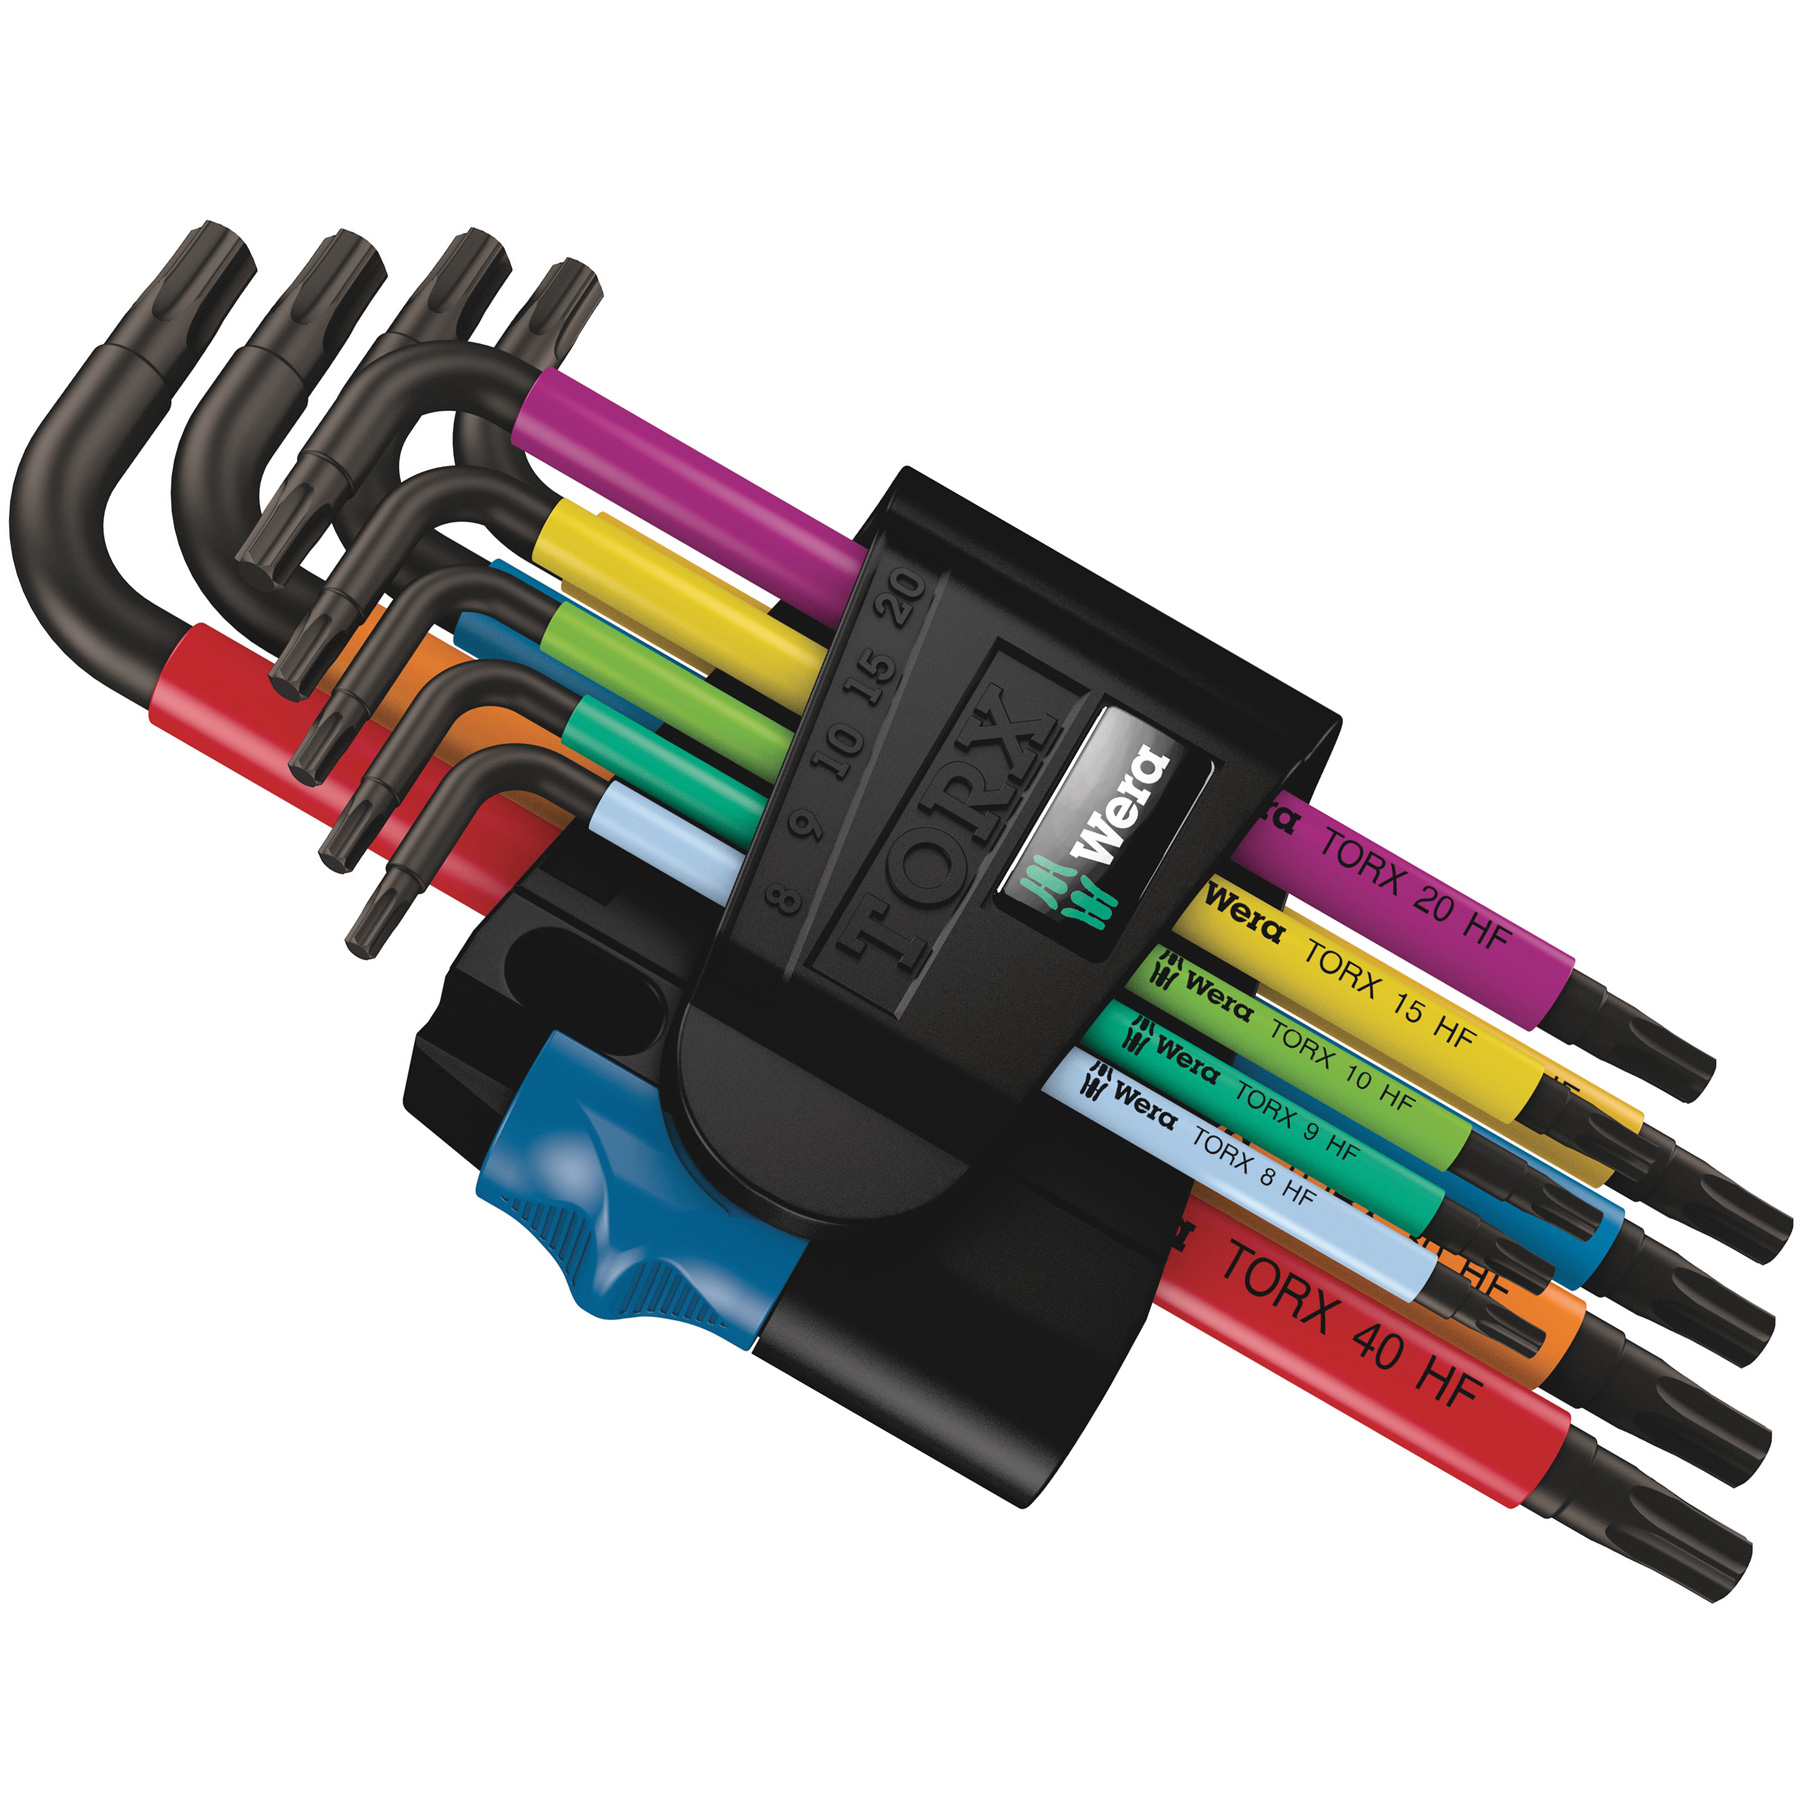 Produktbild von Wera 967/9 TX Multicolour HF 1 - Winkelschlüsselsatz Torx mit Haltefunktion - 9 Teile